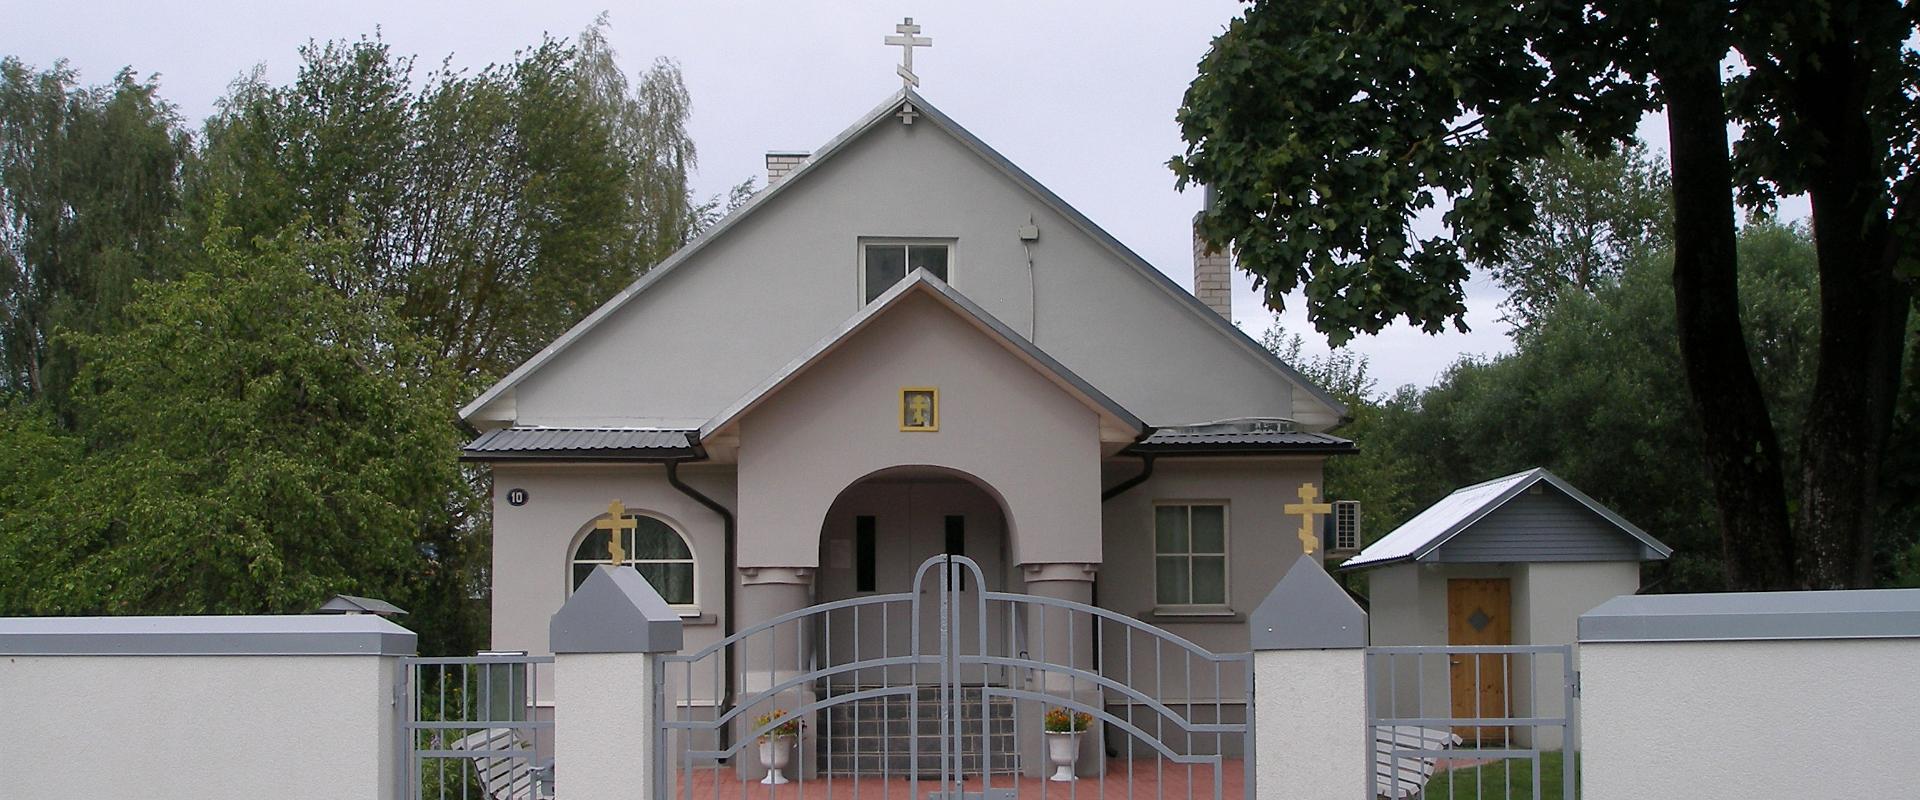 Igaunijas Vecticībnieku Draudzes Biedrības (EVKL) Tartu vecticībnieku lūgšanu nams